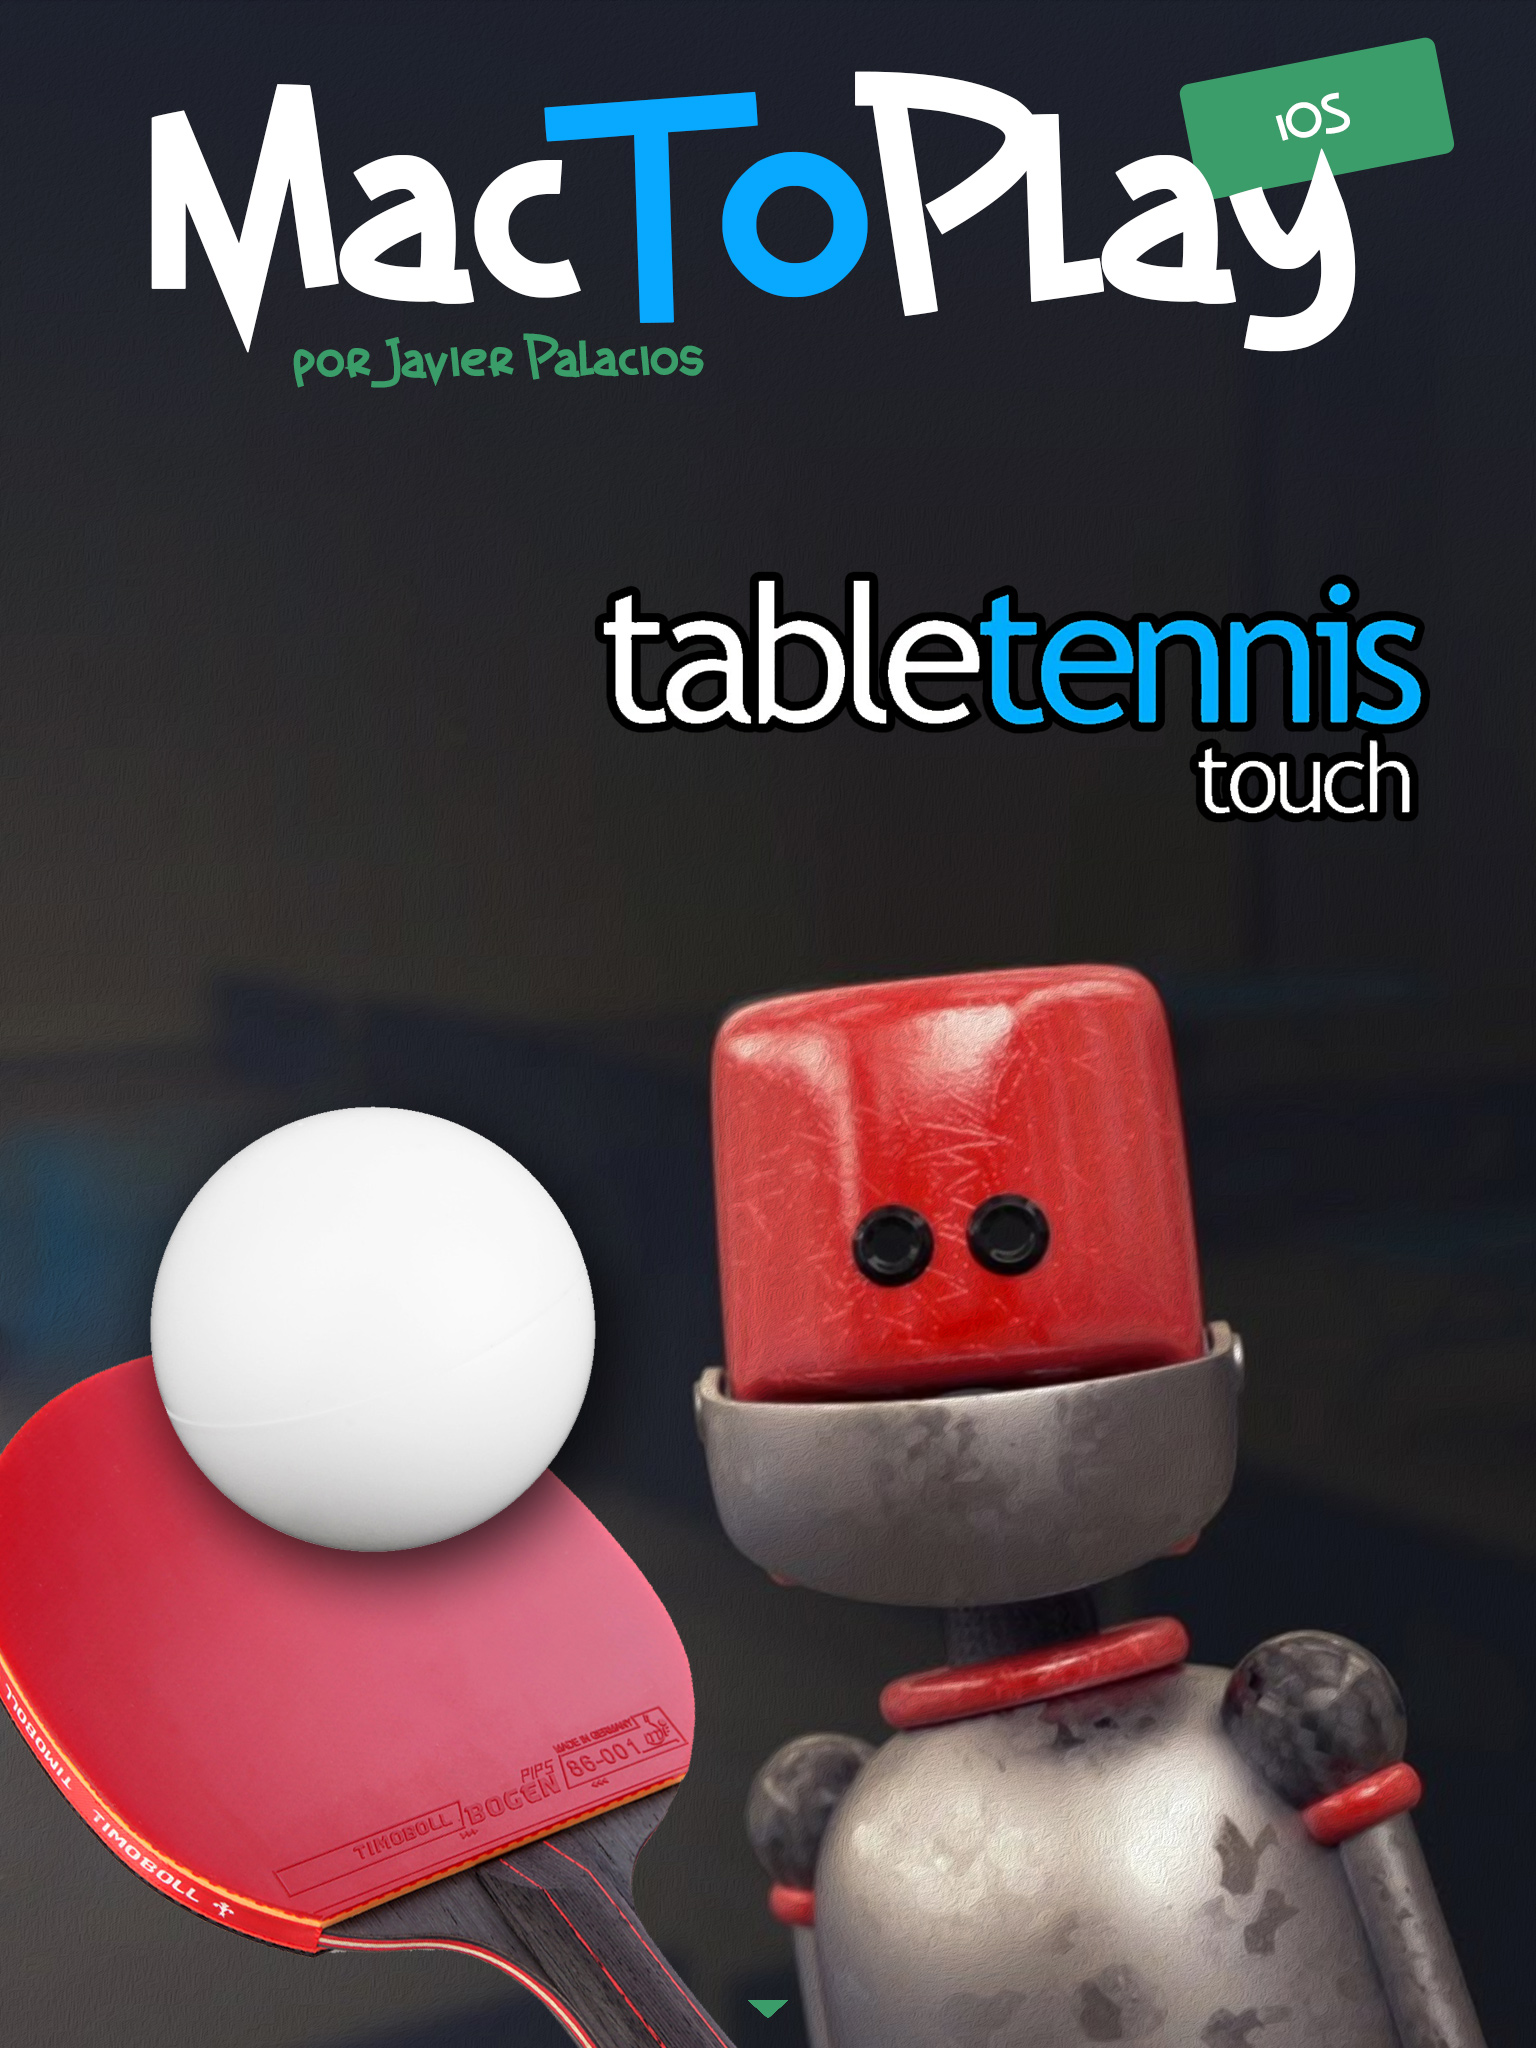 MacToplay ios: table tennis touch. Continúa el artículo abajo